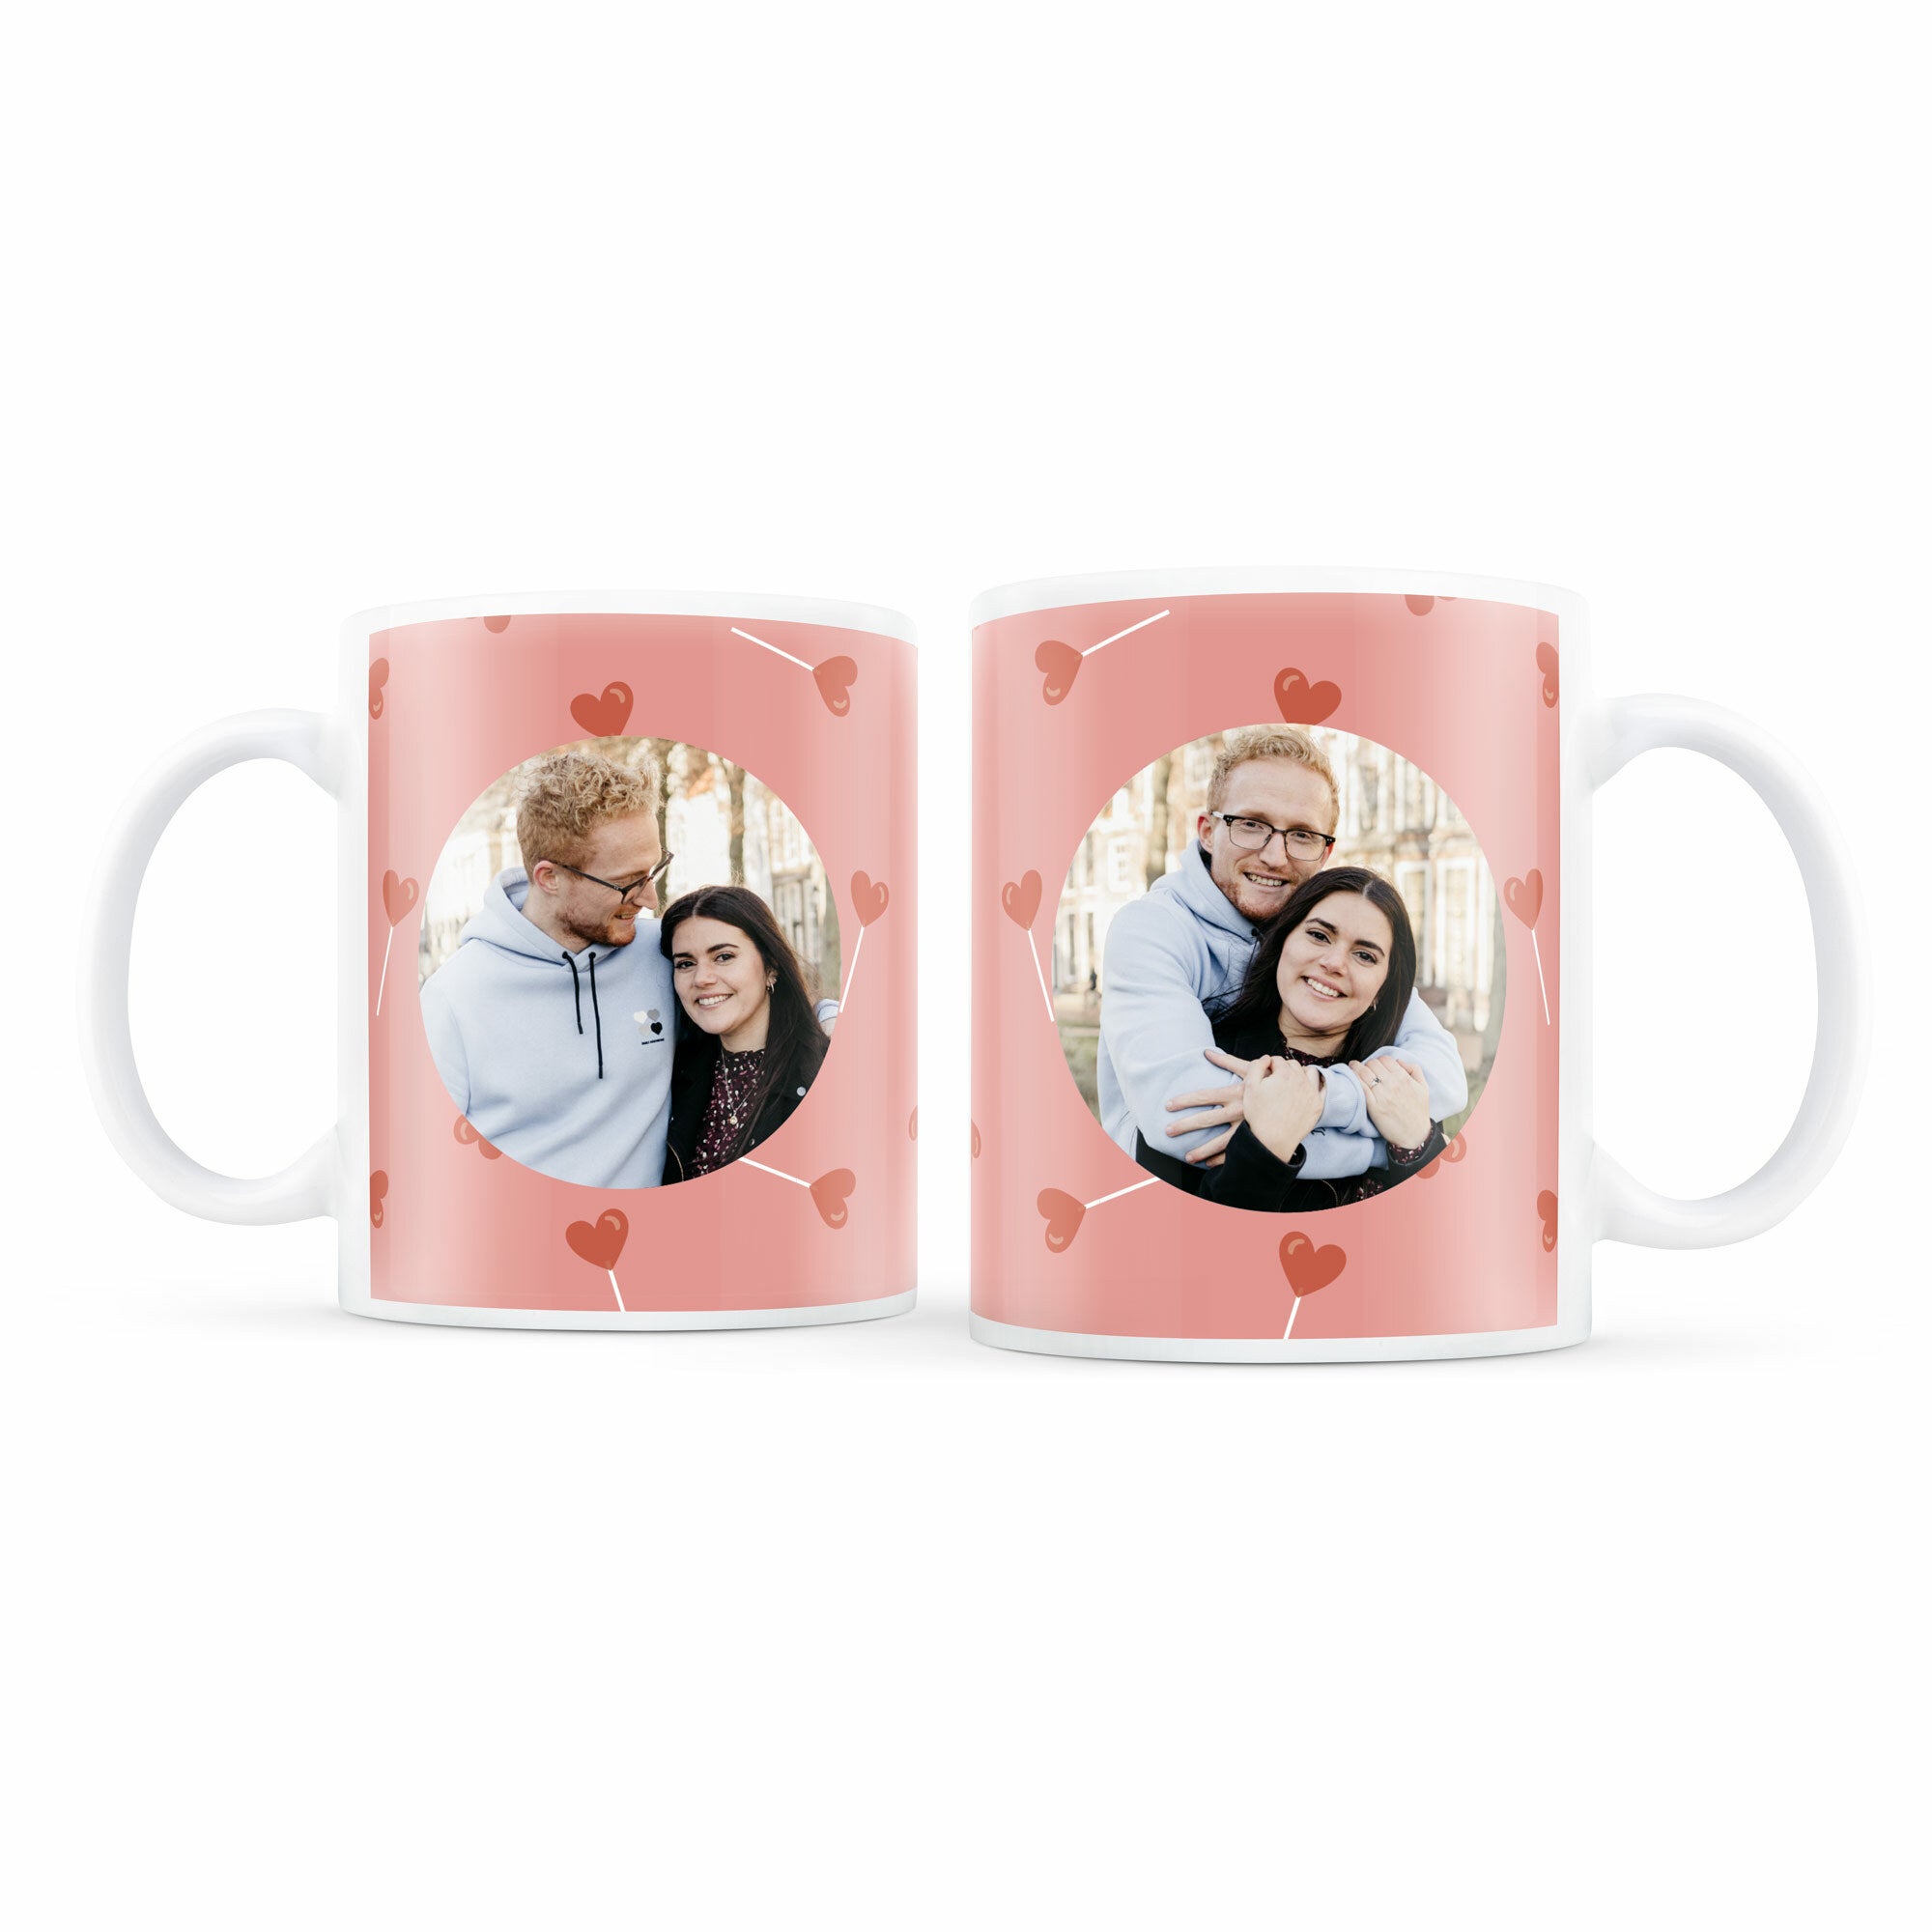 Personalised Mug Set - Love